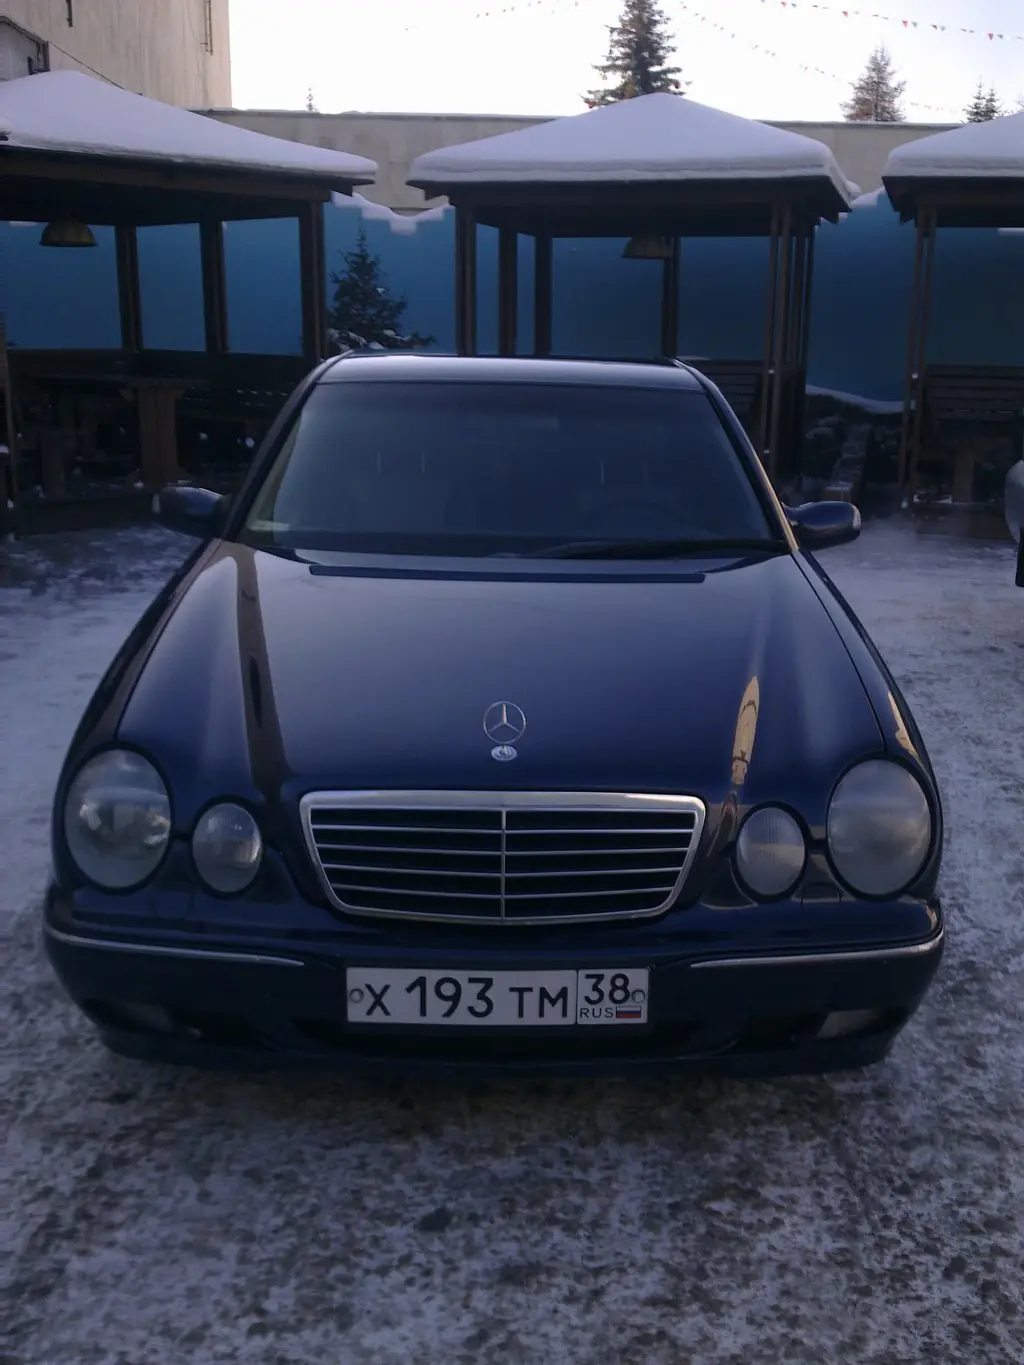 Бывшая Mercedes-Benz E-Class Avantgarde Очкарик Гена: обзор автомобиля, фото и характеристики